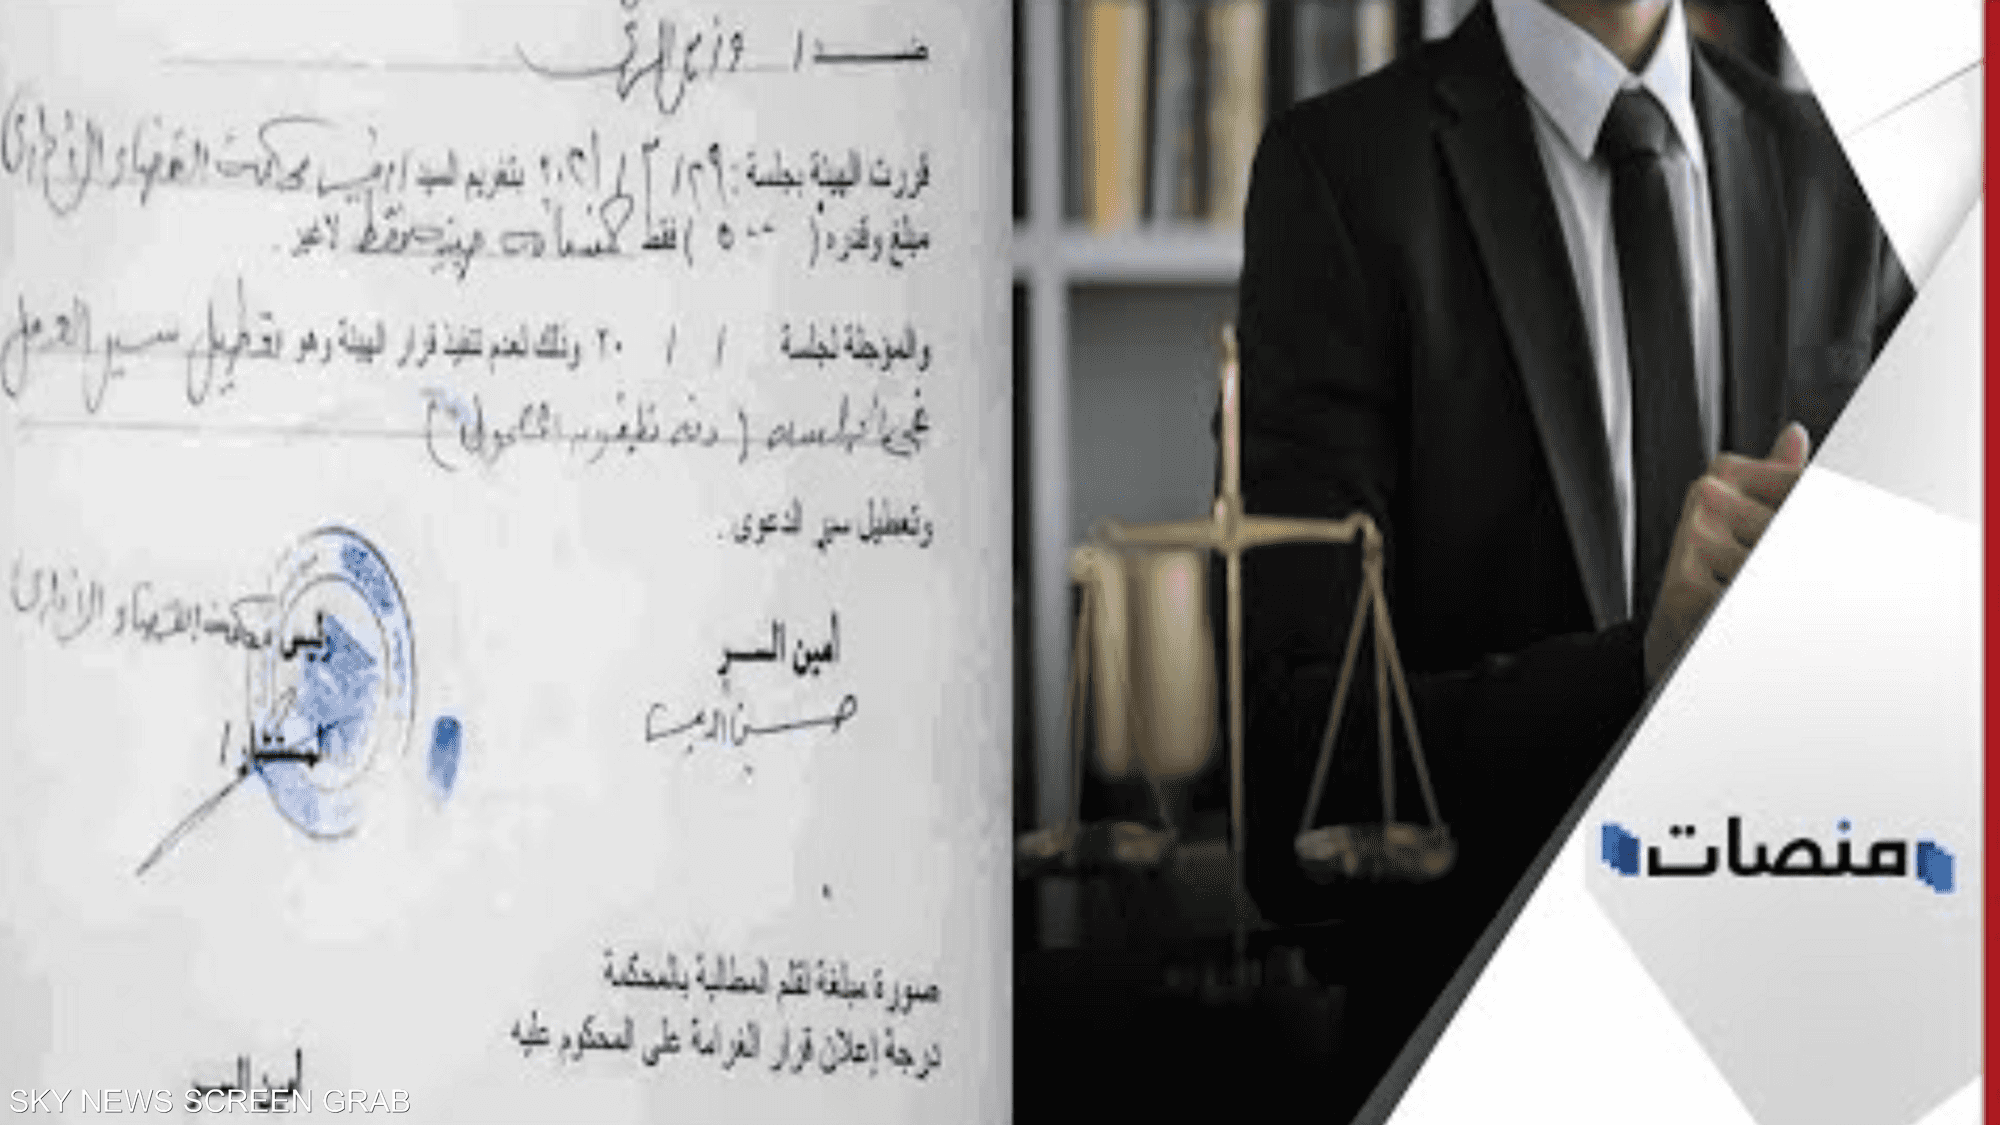 لأول مرة في مصر.. قاض يصدر حكما ضد نفسه بغرامة مالية